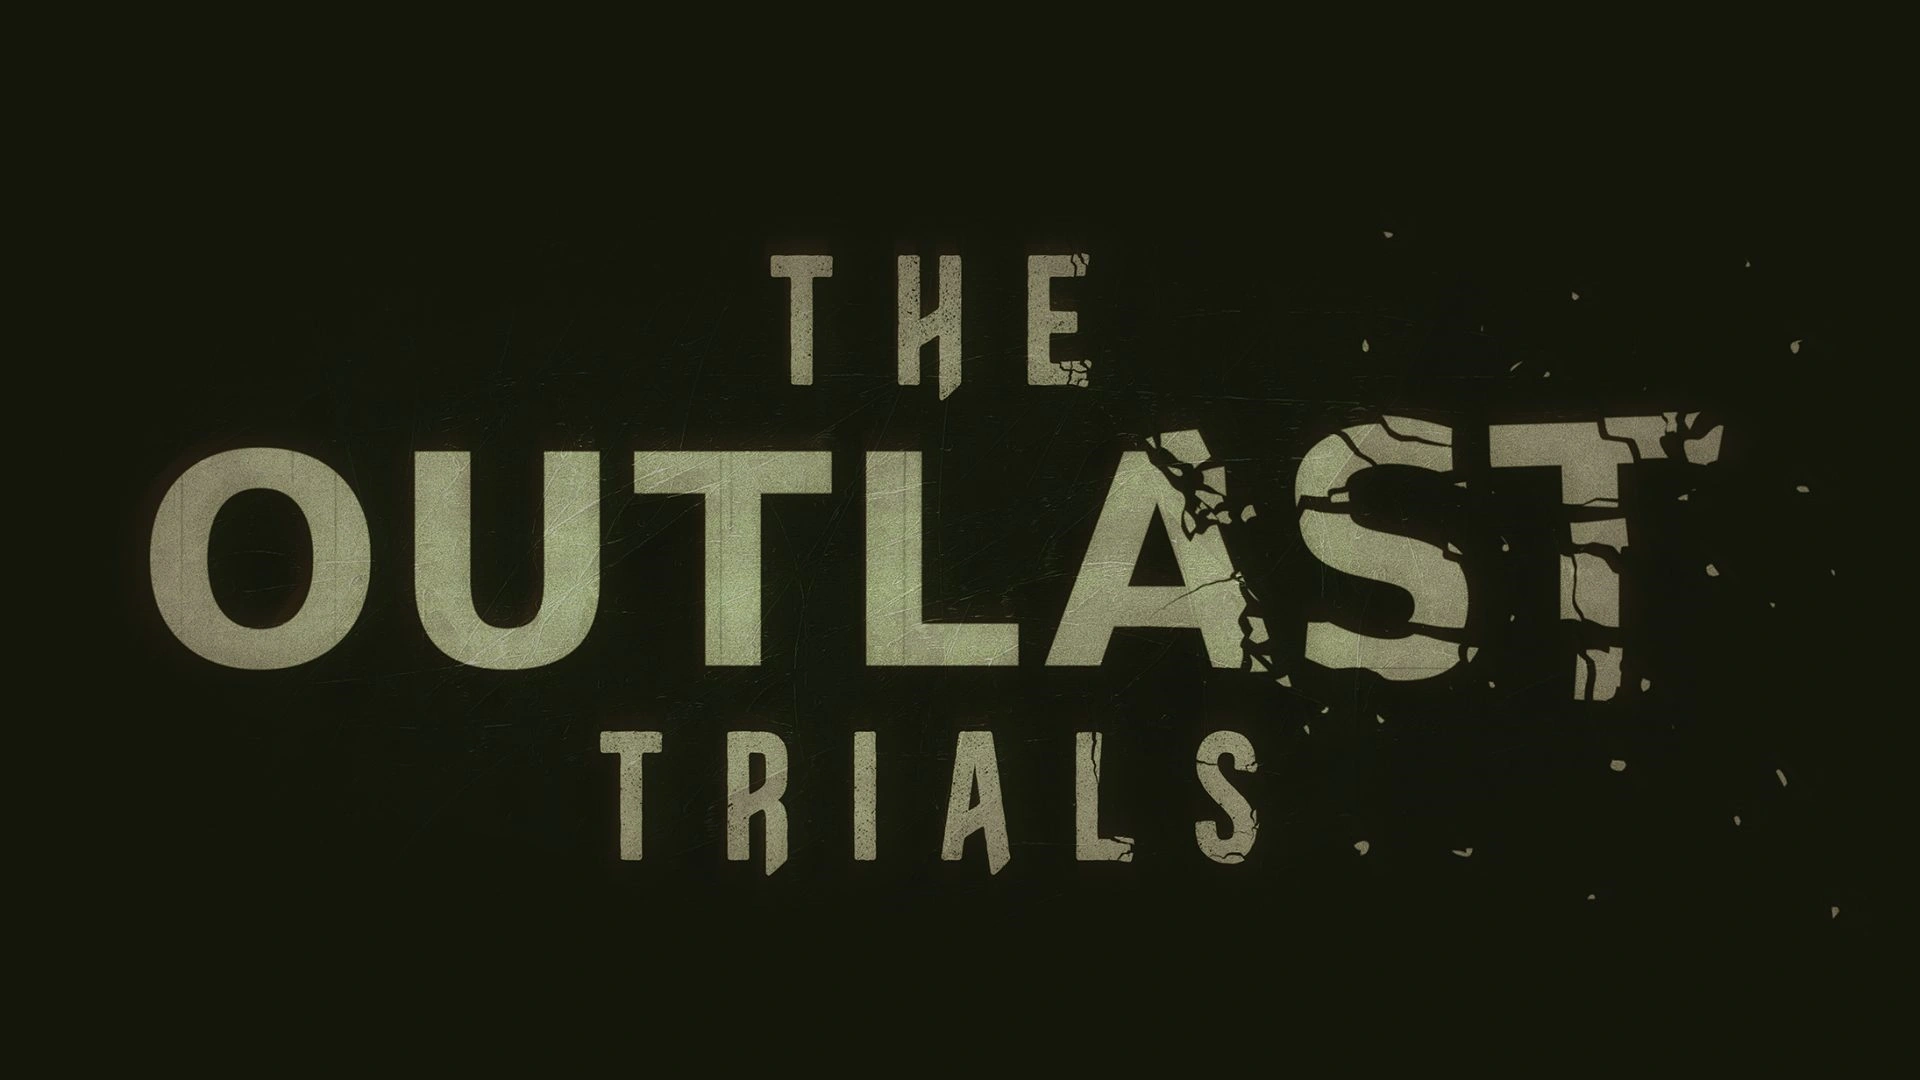 Das Horror-Adventure Outlast Trials wurde vollständig veröffentlicht